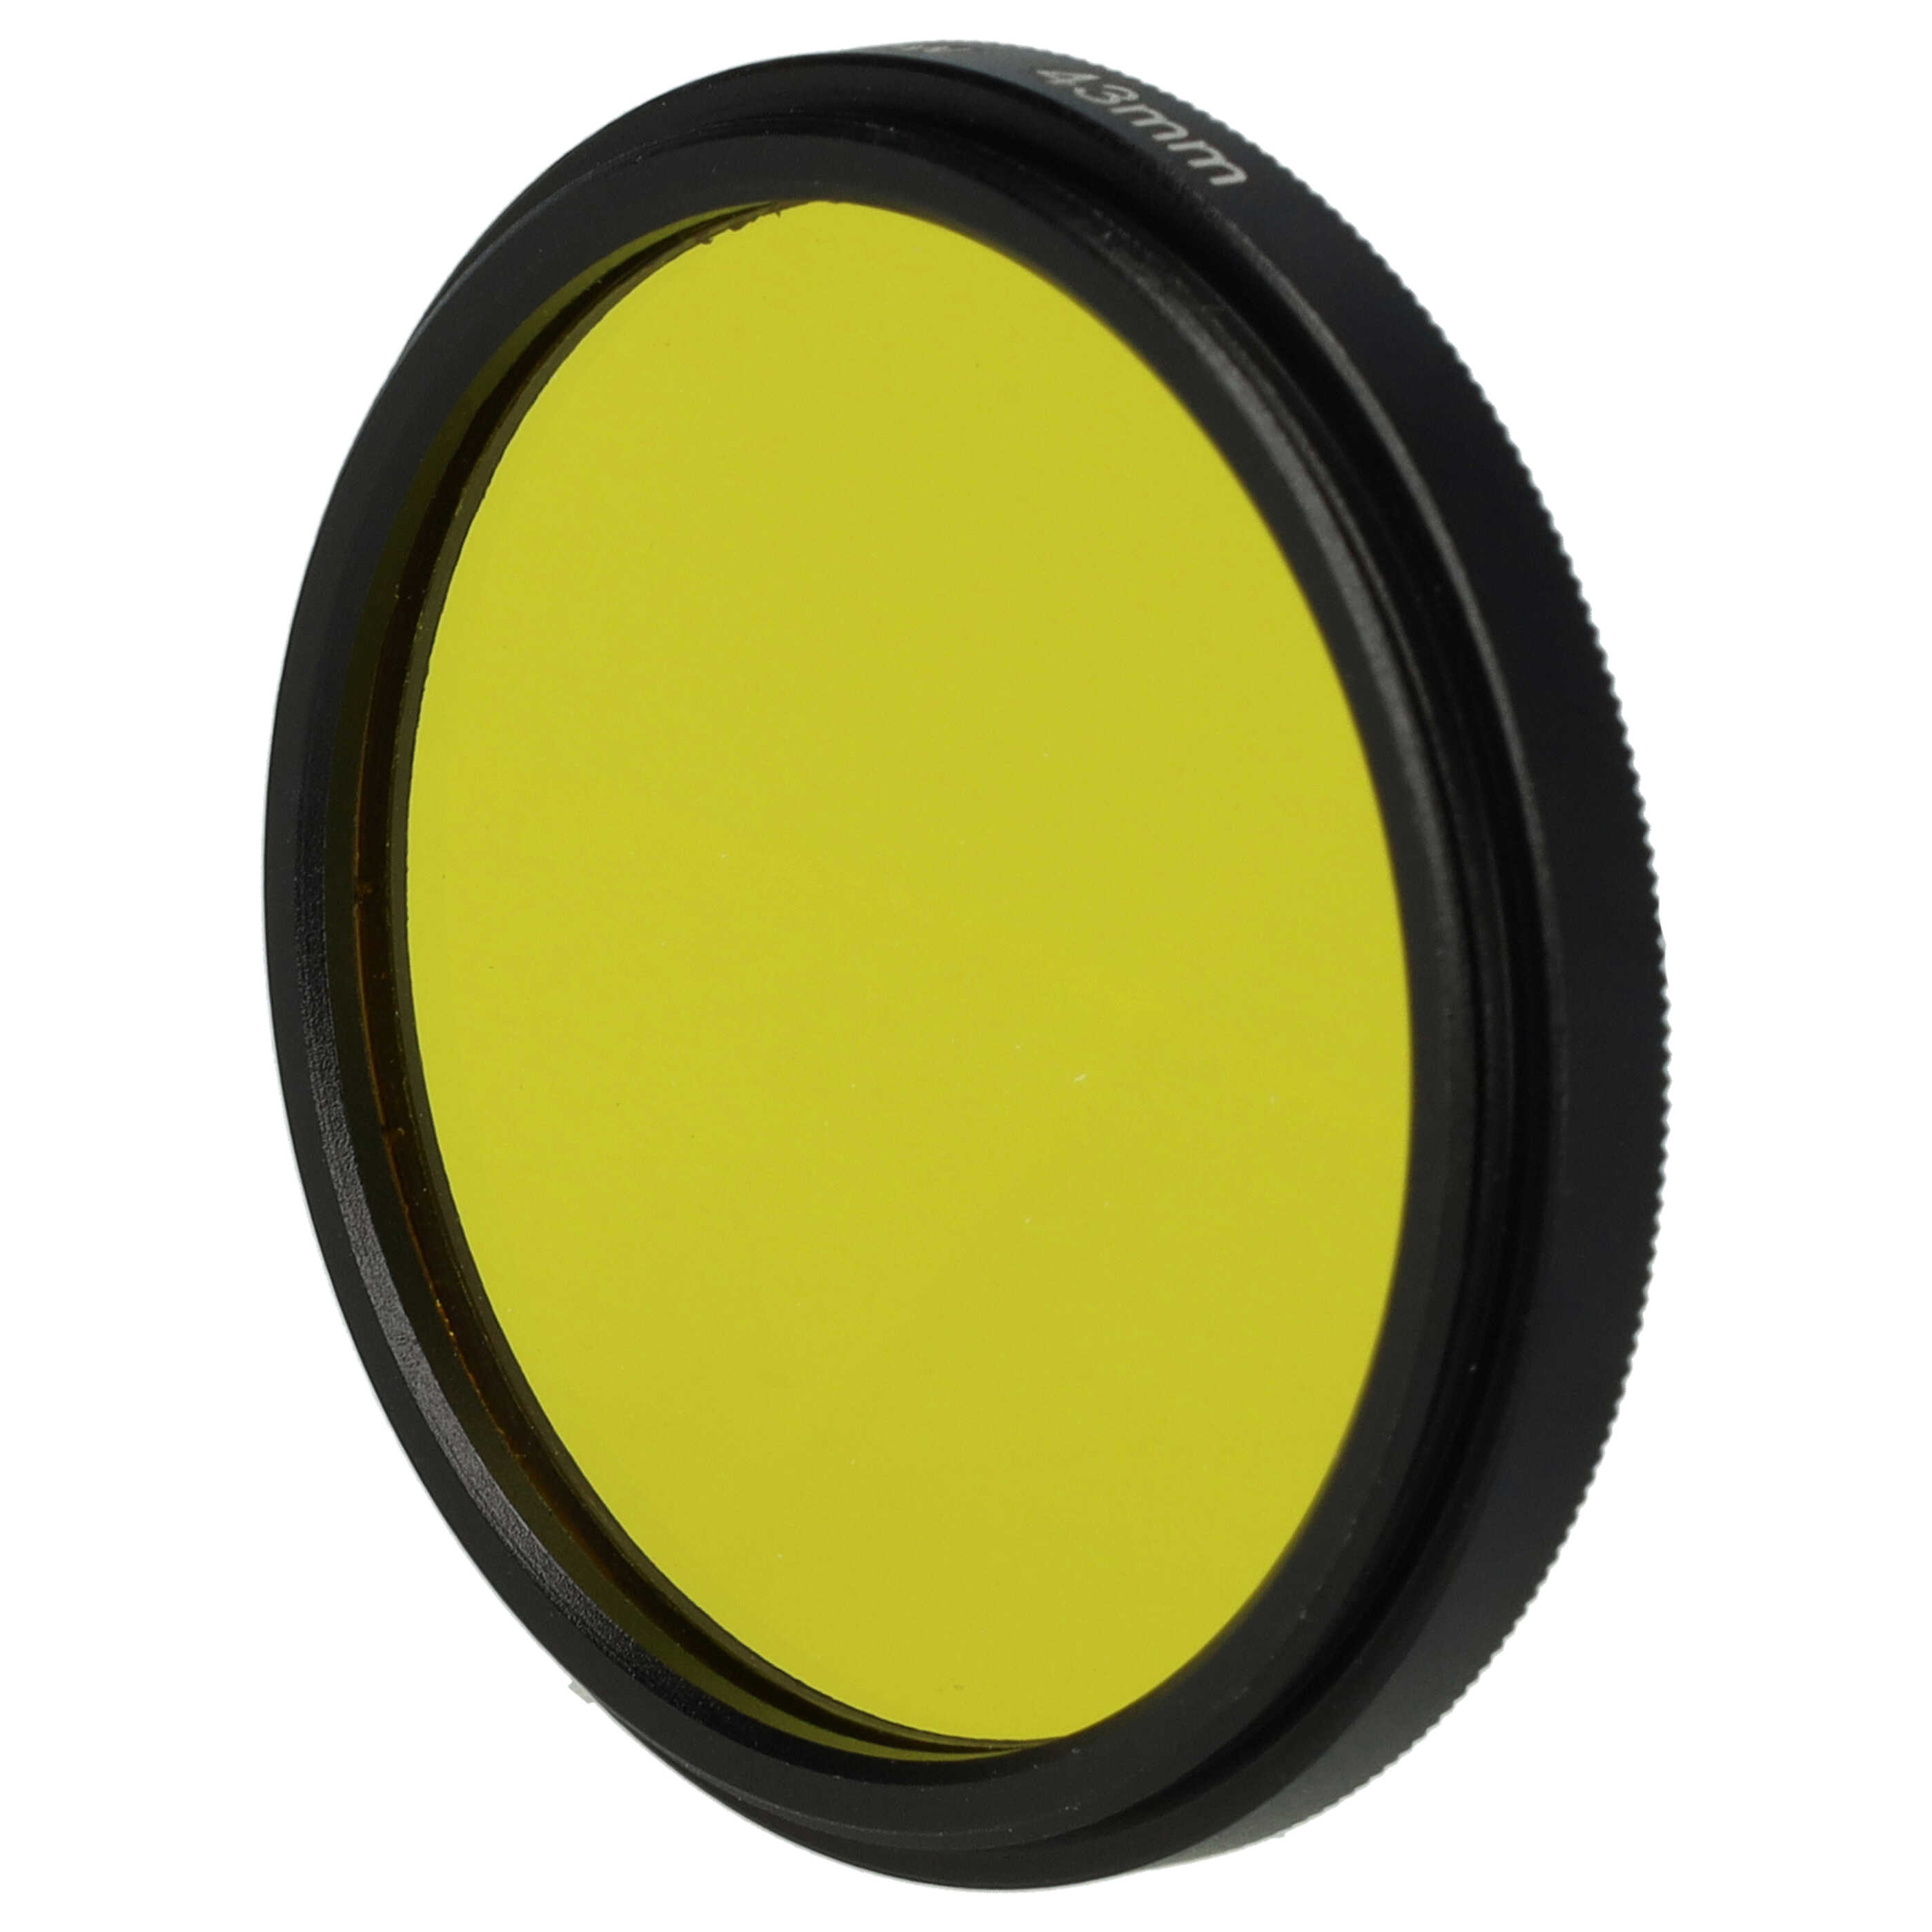 Filtre de couleur jaune pour objectifs d'appareils photo de 43 mm - Filtre jaune